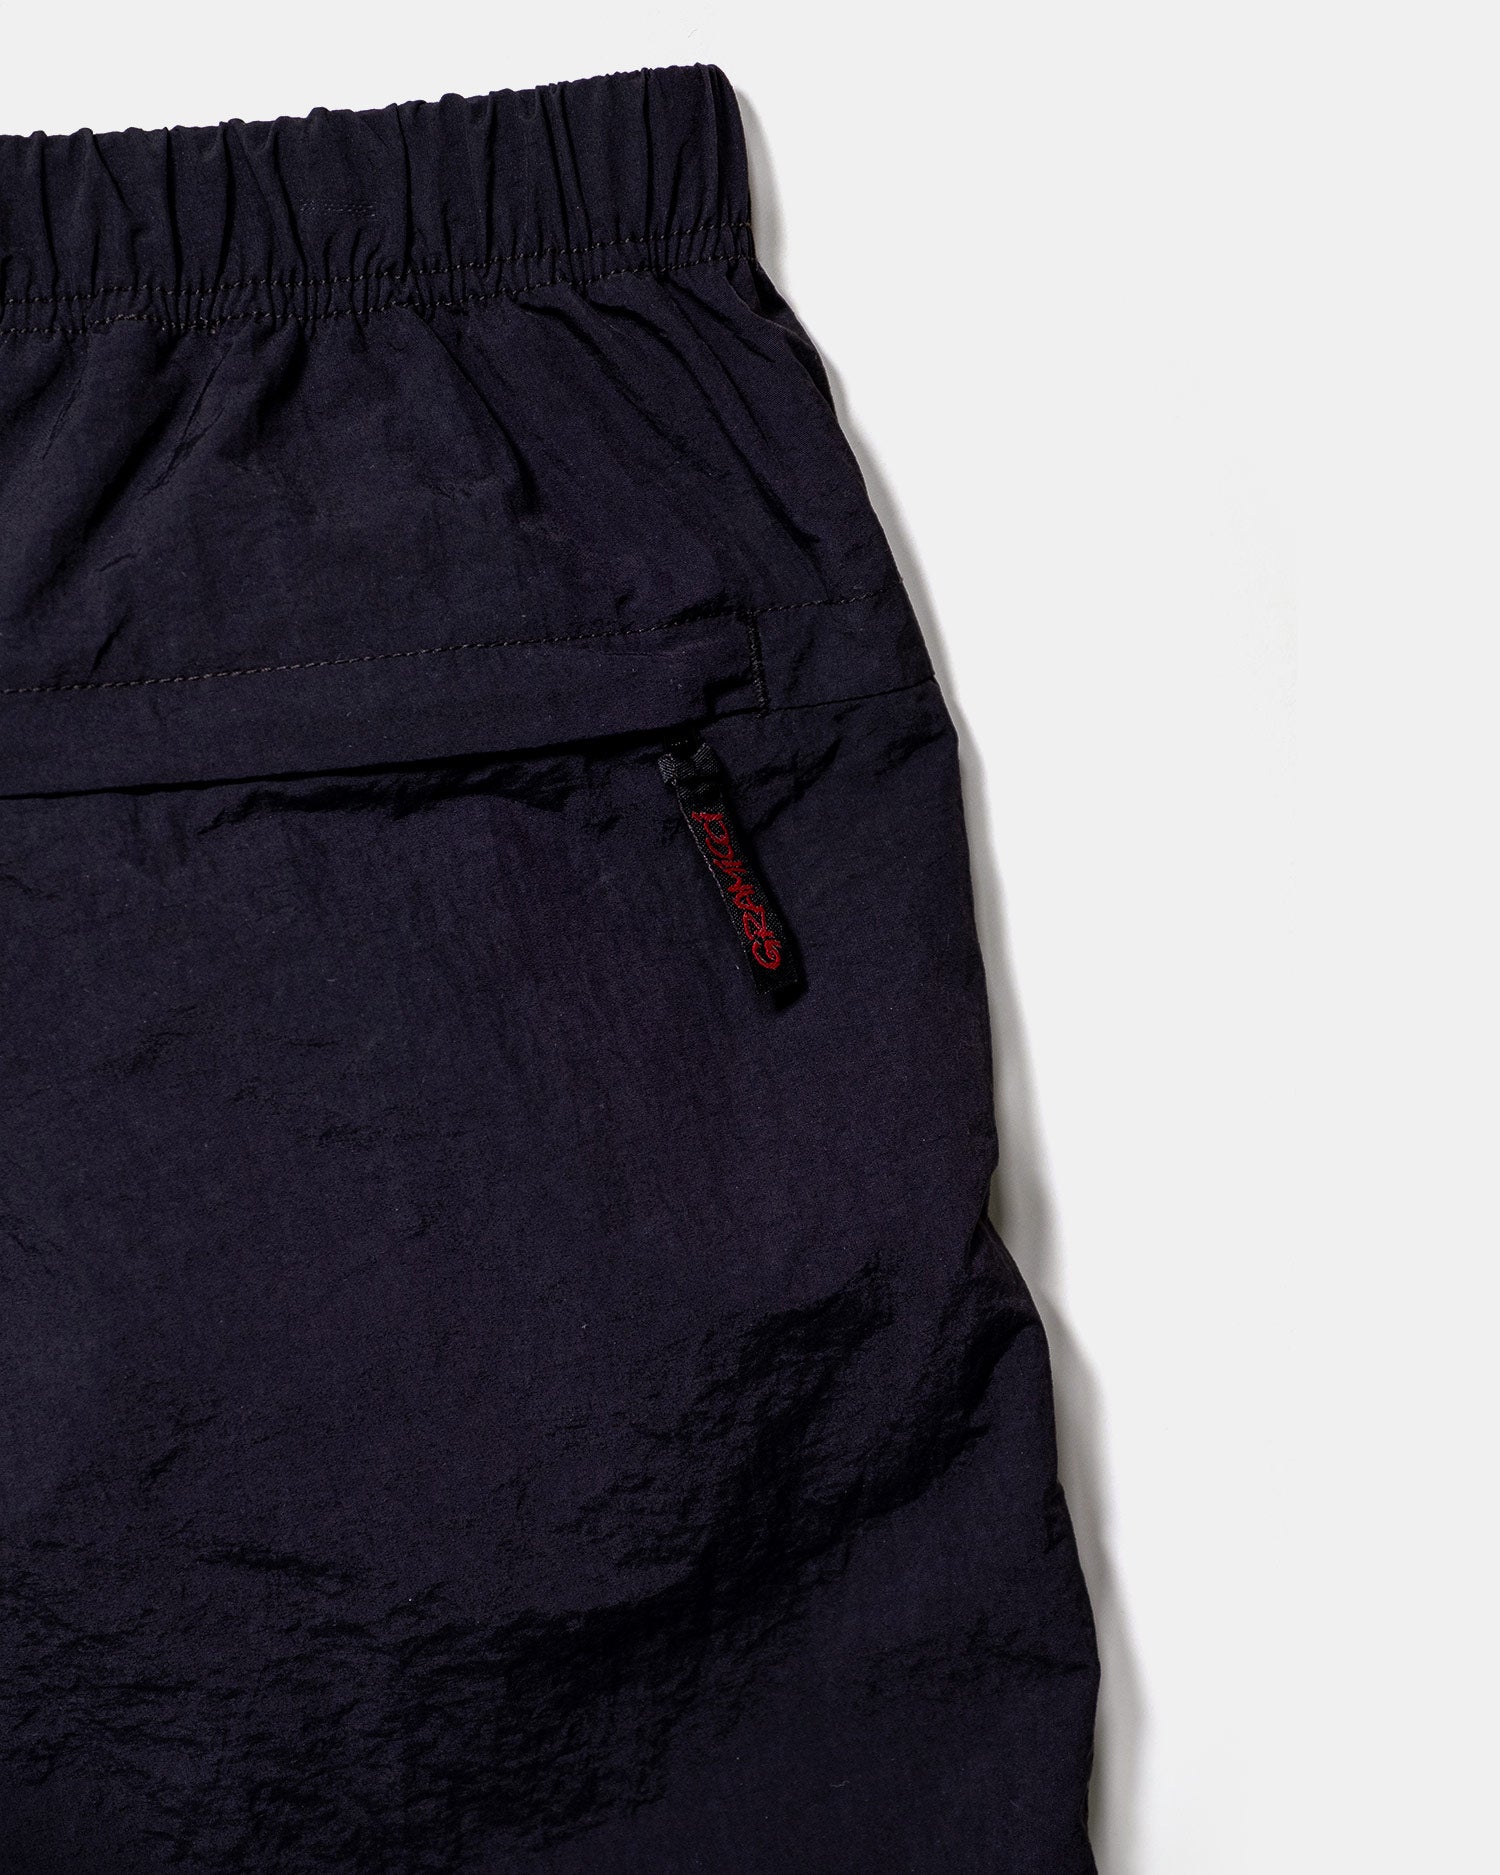 Gramicci Nylon G-Shorts Black